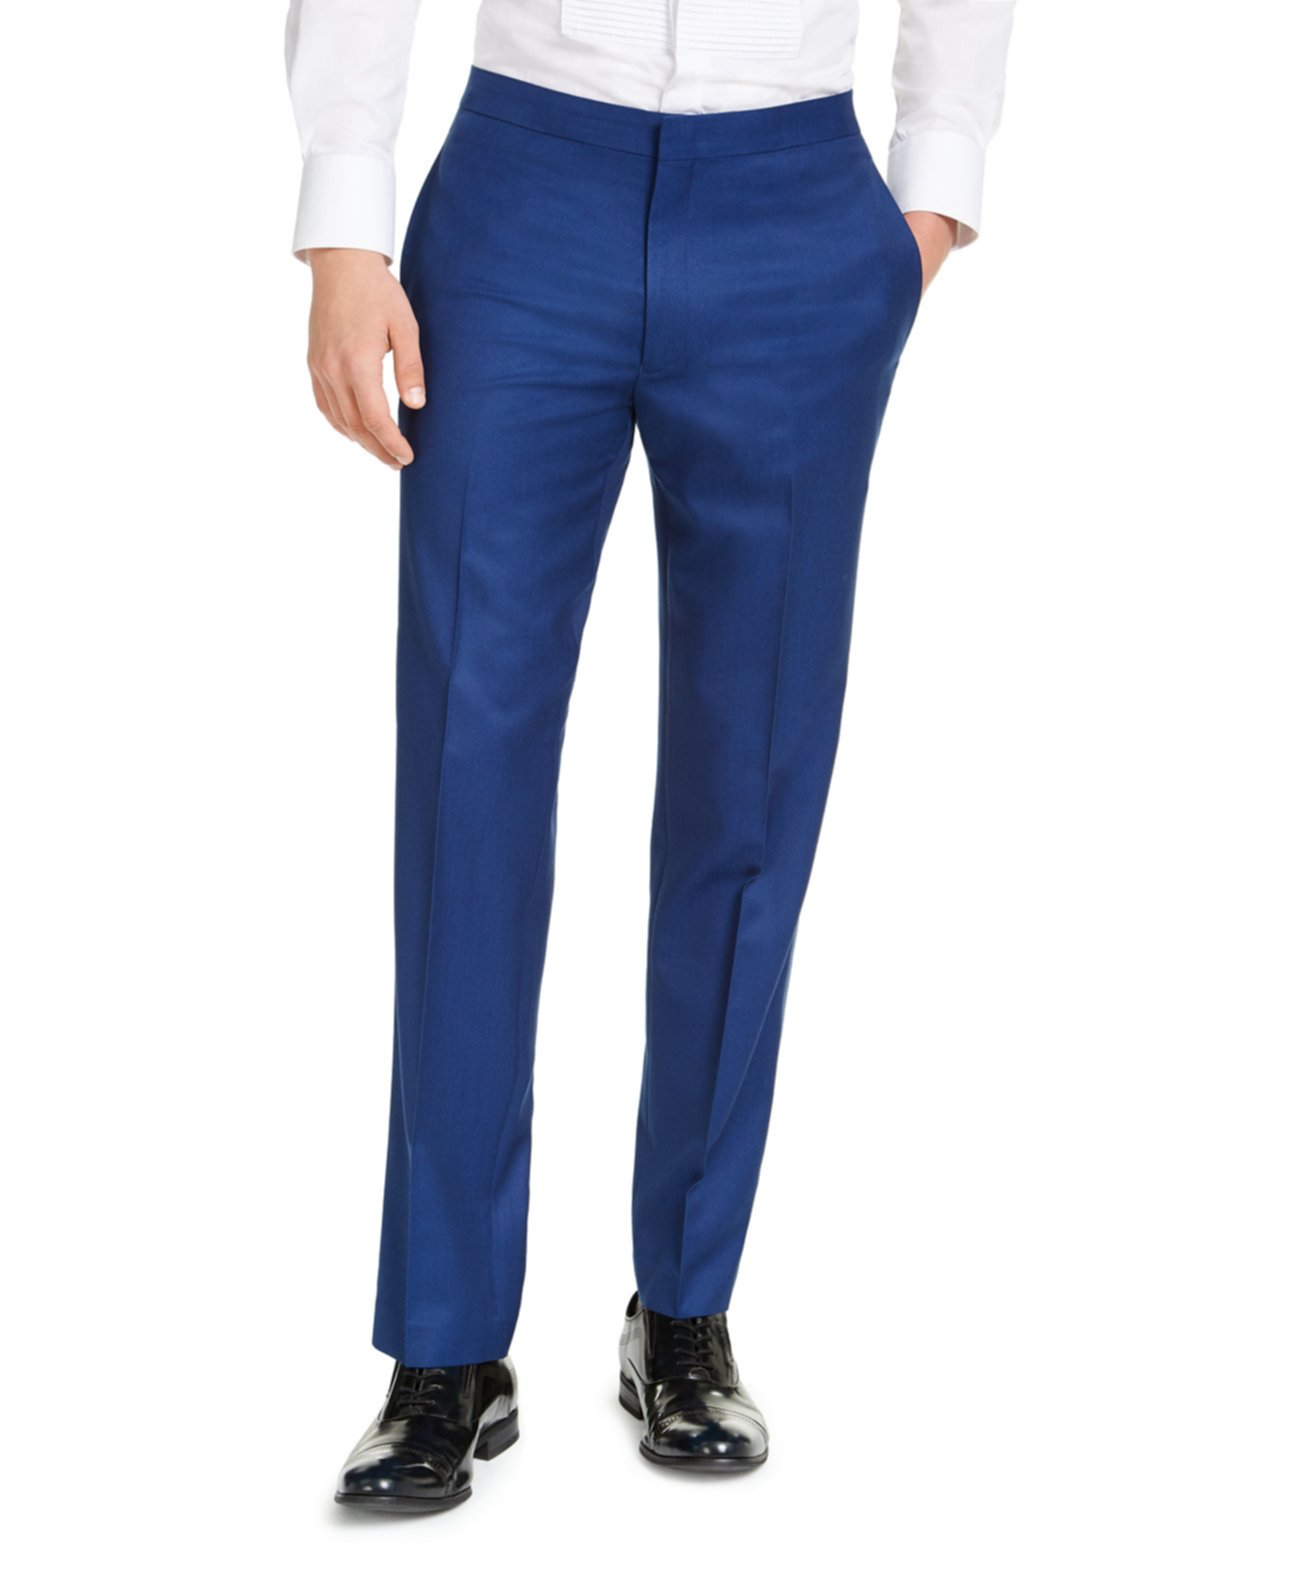 Мужские облегающие синие брюки-смокинг, созданные для Macy's Alfani